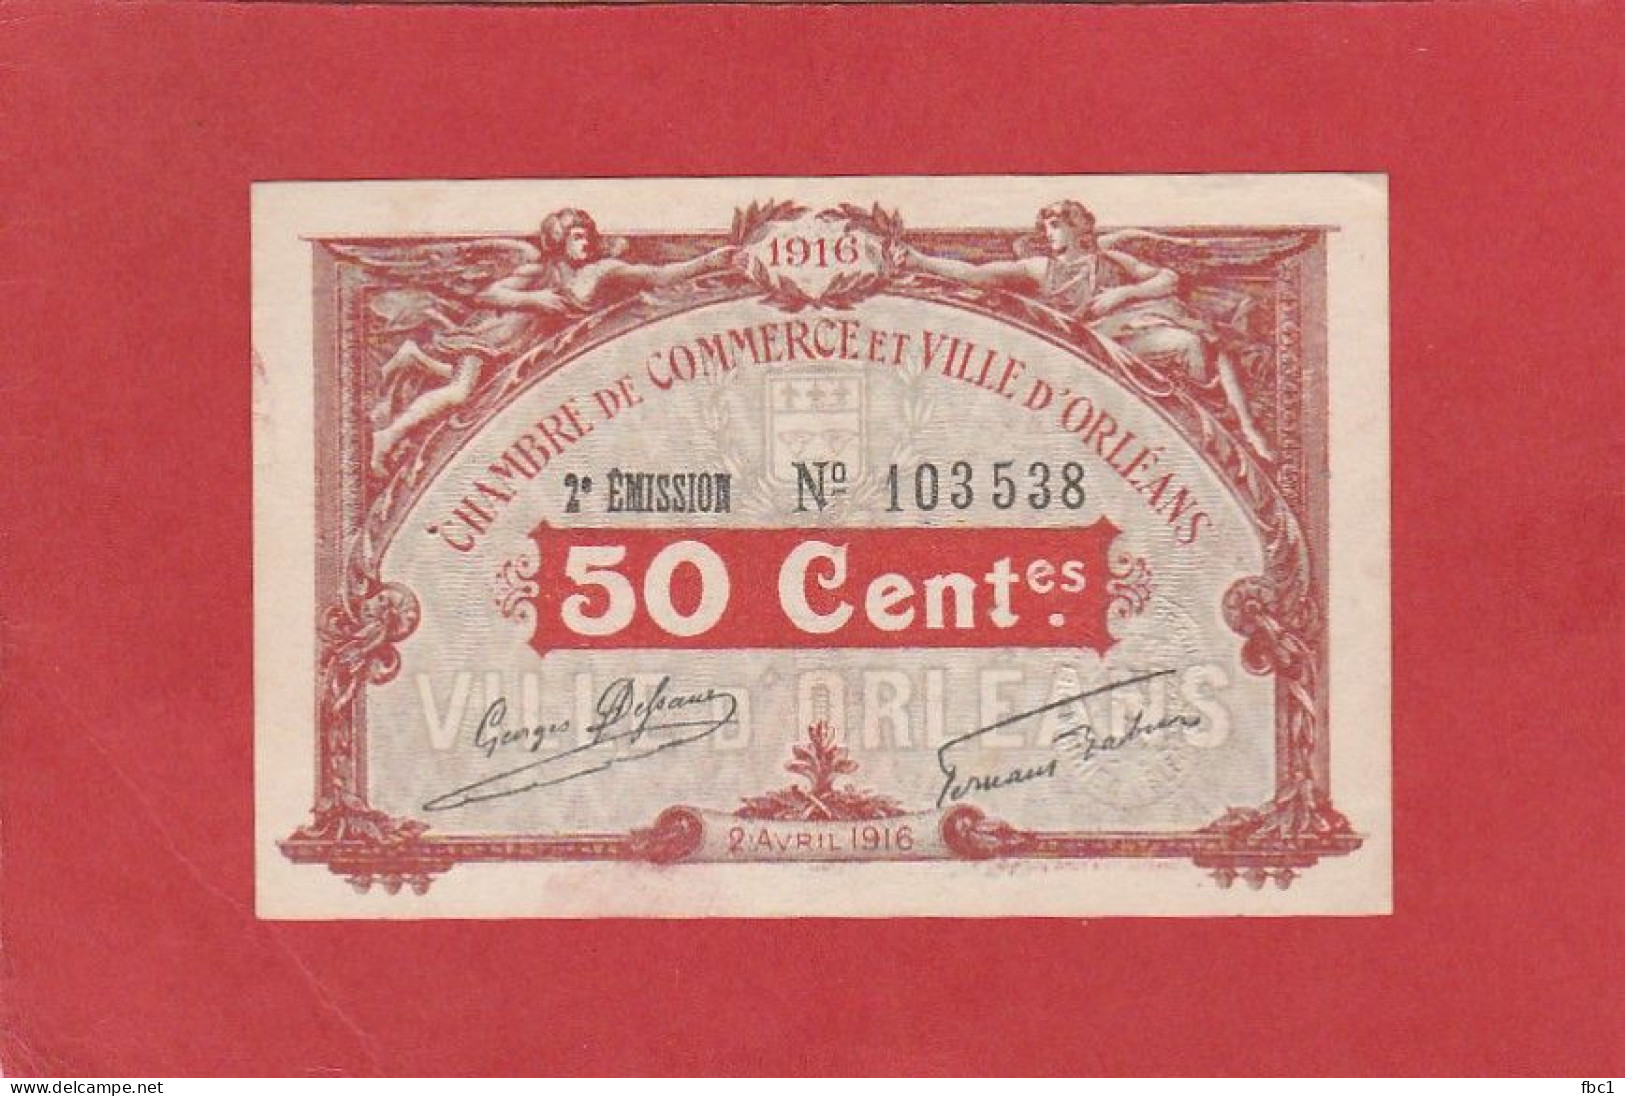 Loiret - Chambre De Commerce Et Ville D'Orléans - 50 Centimes (1916) 2e émission - Handelskammer